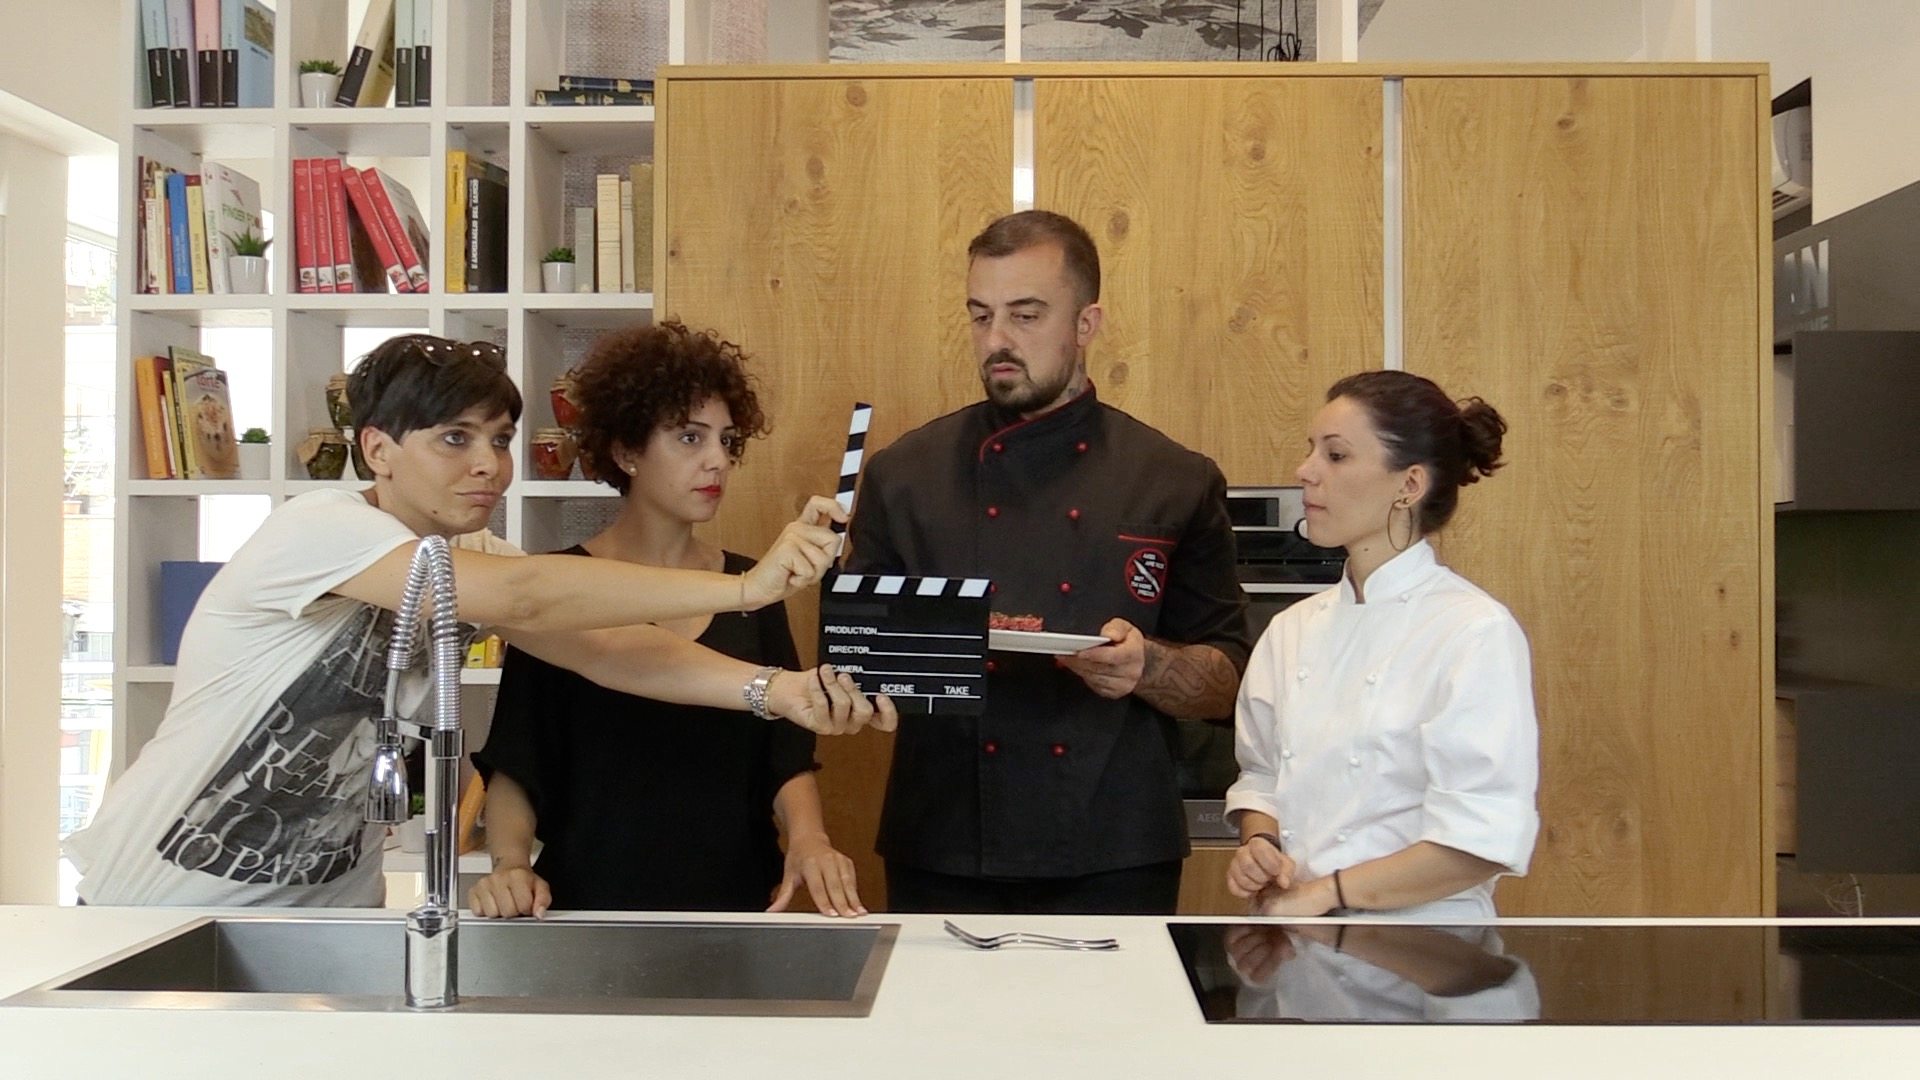 da sx Ilaria Chiesa (RecTv), Deborah Donadio (ISSR), Chef Rubio, Serena Sacco (L'AltroSpazio). Location: set Aran Concept Store di Roma Gregorio VII.